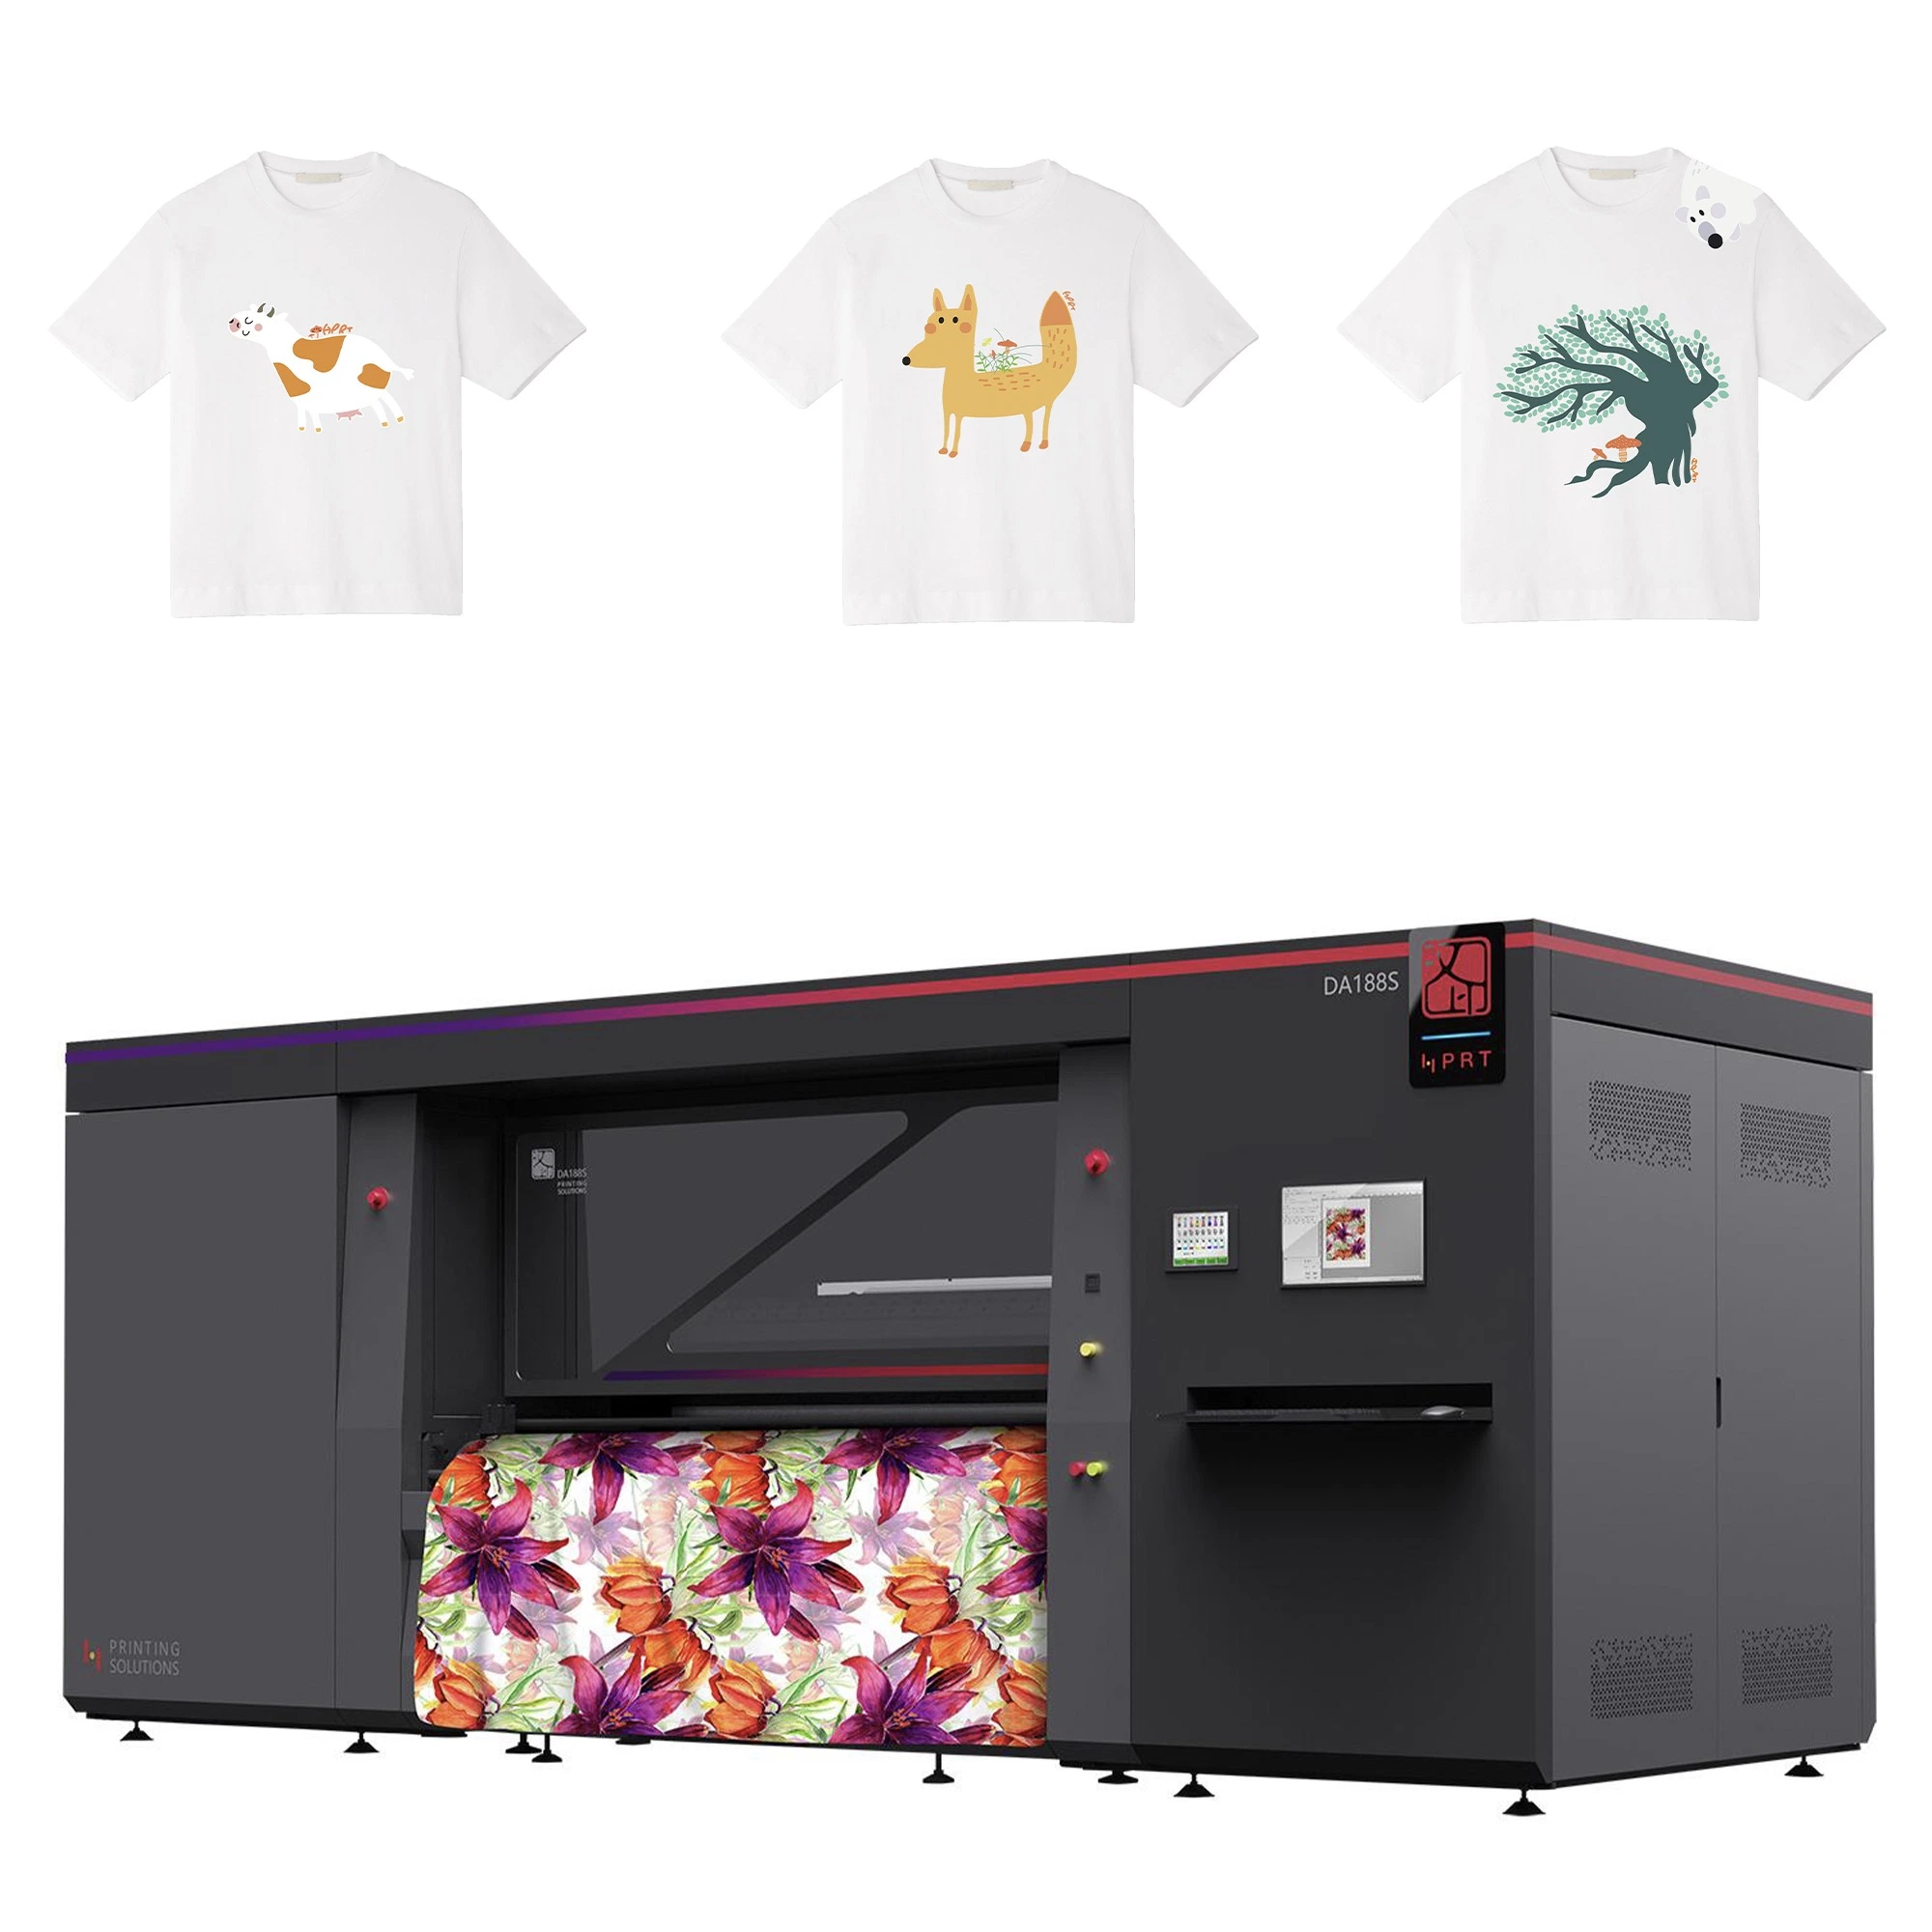 Cabezal de impresión de Kyocera/16 32 colores/HPRT de rollo a rollo industrial de la impresora de inyección de tinta digital prenda textil Tshirt máquina de impresión